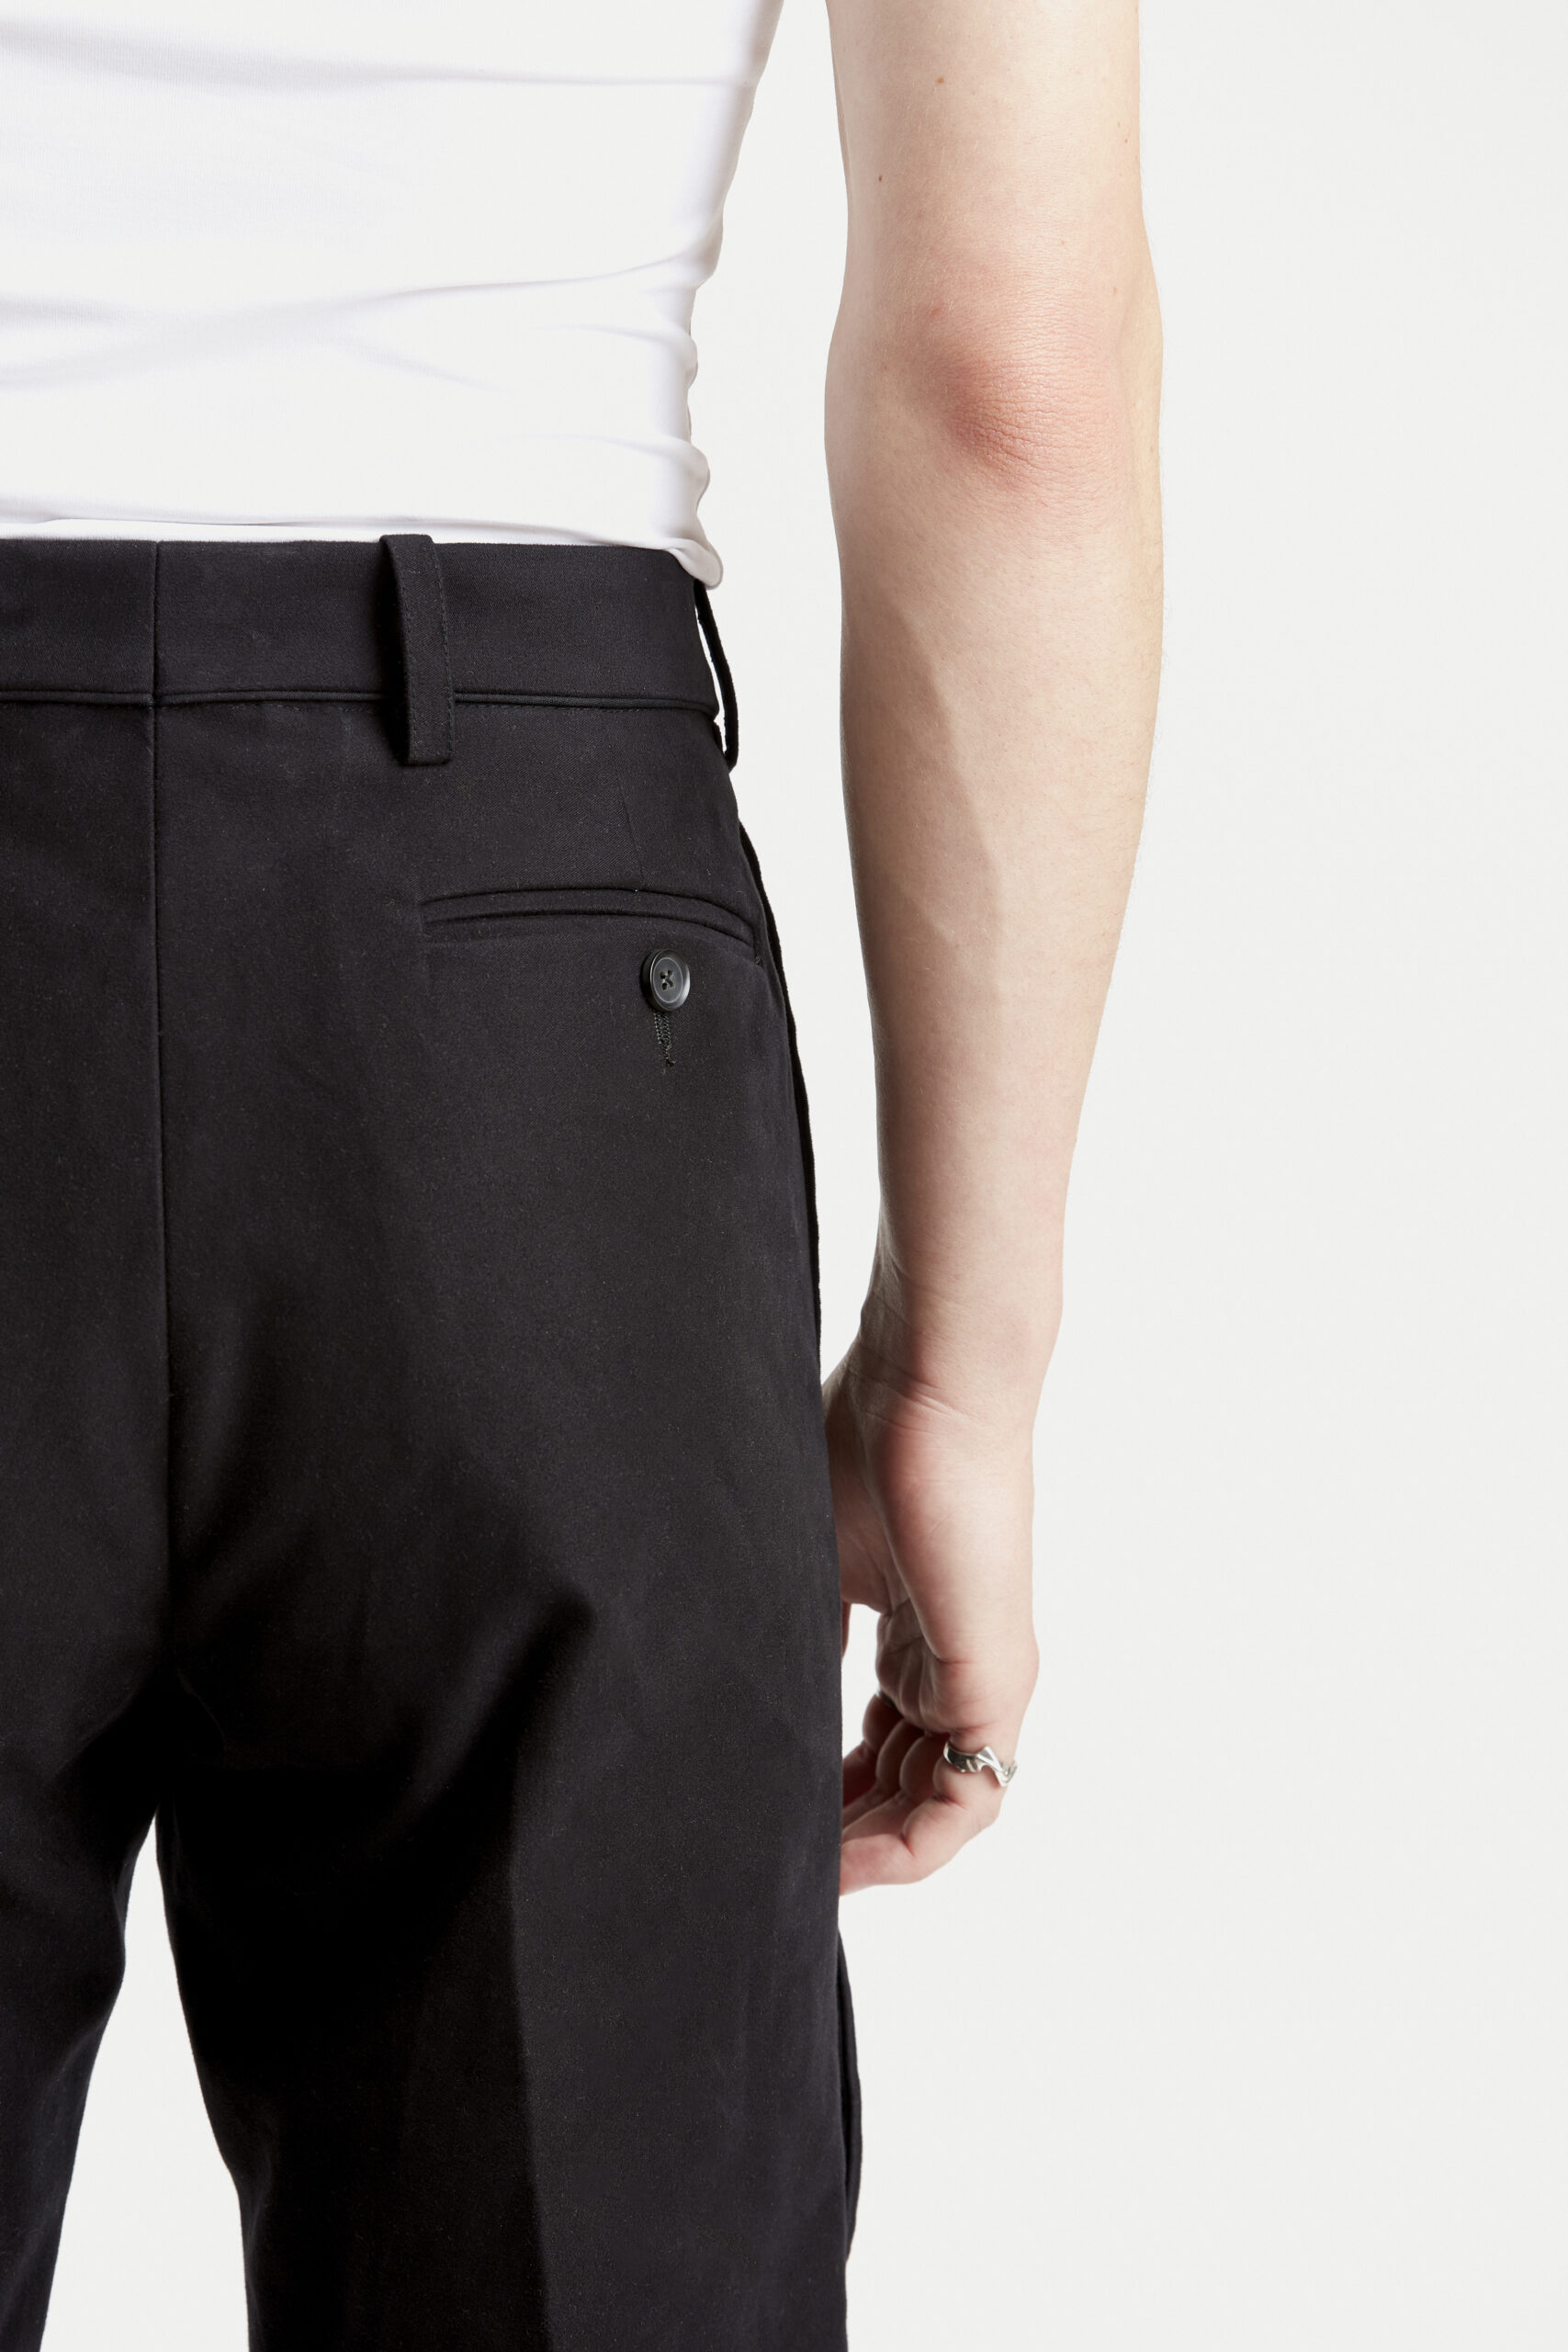 hi-pantalon-costume-confort-à-pli-design-tendance-fashion-coton-japonais-noir-hiver-29thoctober-3